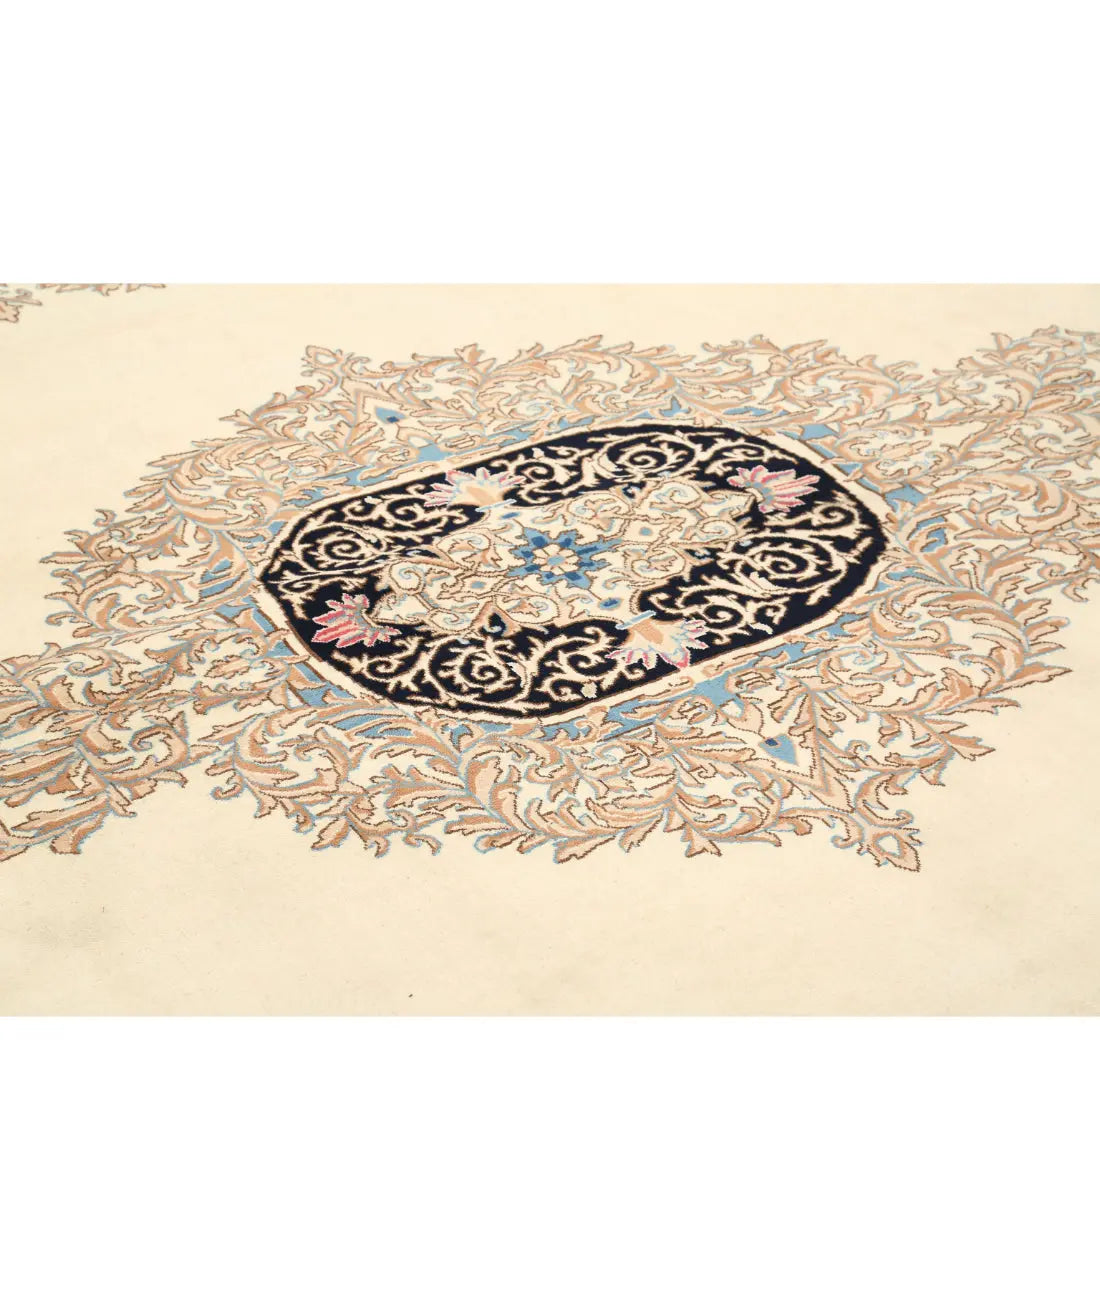 Hand Knotted Antique Persian Kerman Wool Rug - 9'11'' x 13'8'' - Arteverk Rugs Area rug